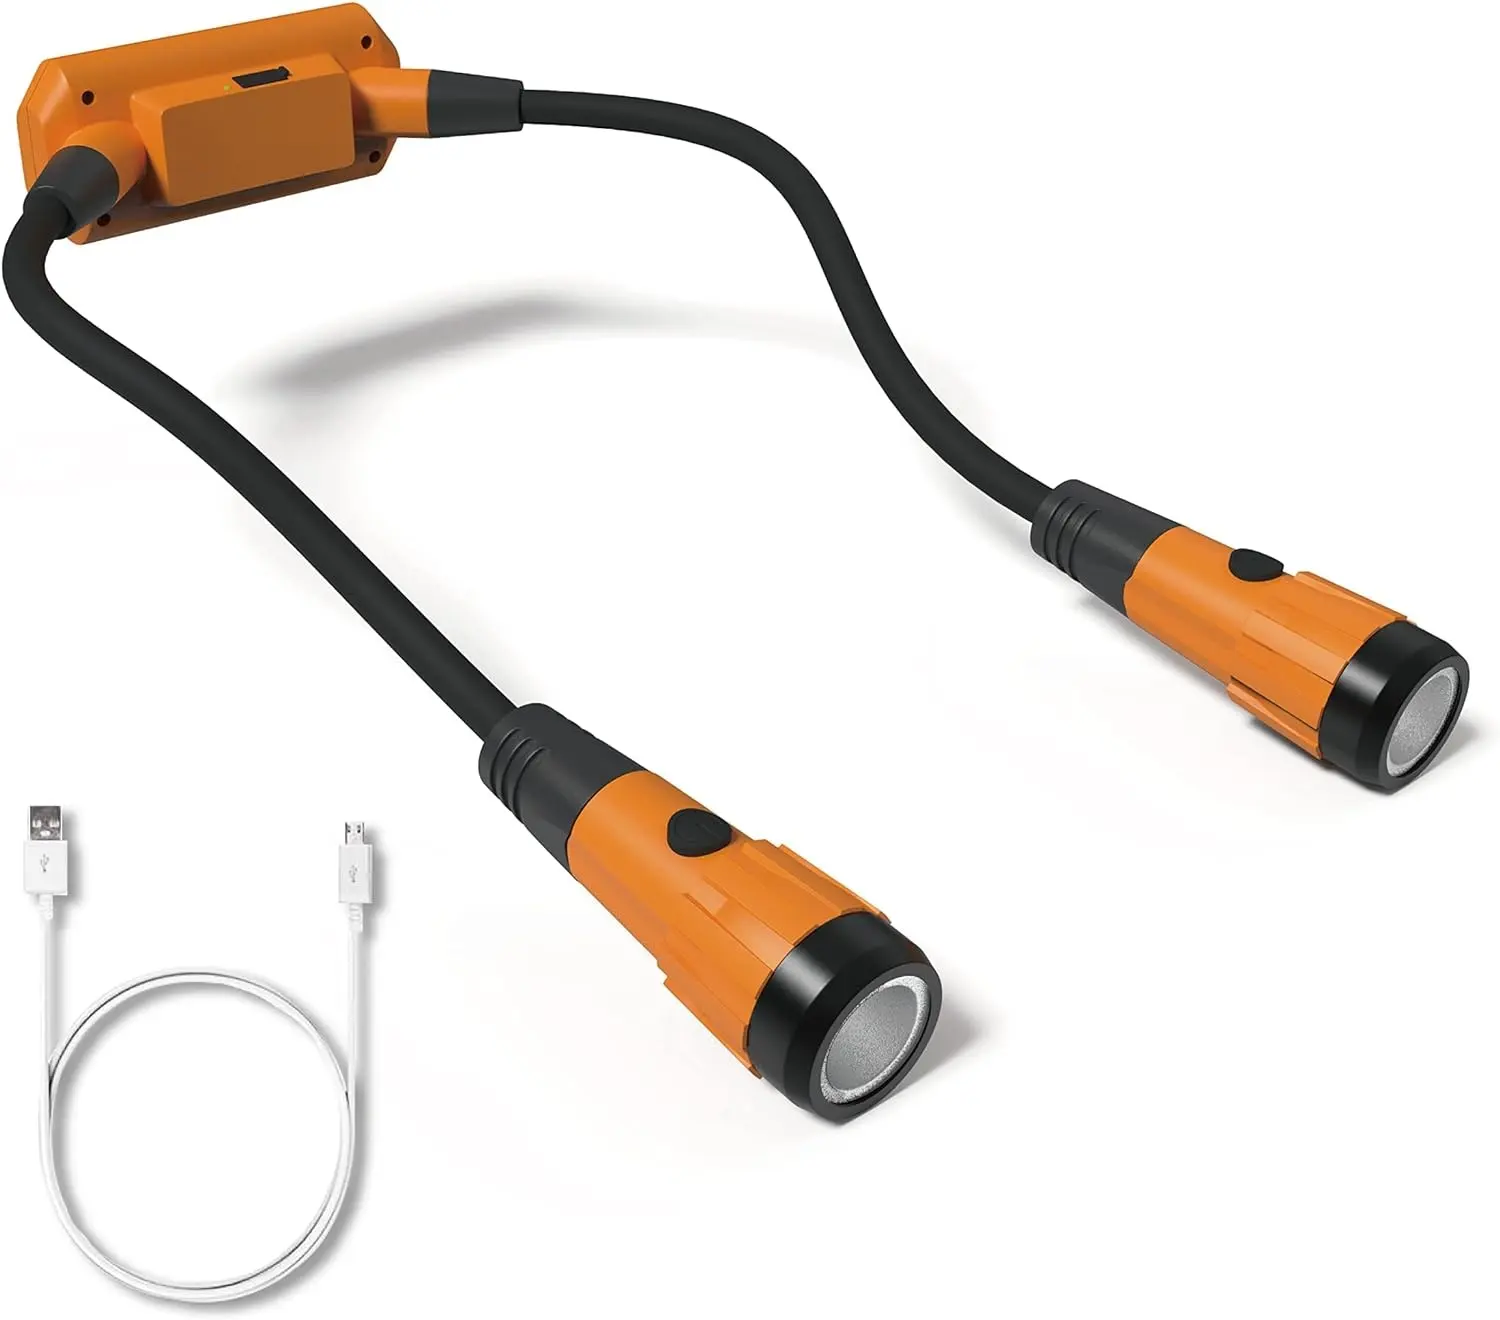 320 Lumens USB ชาร์จไฟได้แม่เหล็ก LED Slim ซ่อมไฟทํางาน 360 องศาไฟทํางานคอเวิร์คช็อปแบบยืดหยุ่น